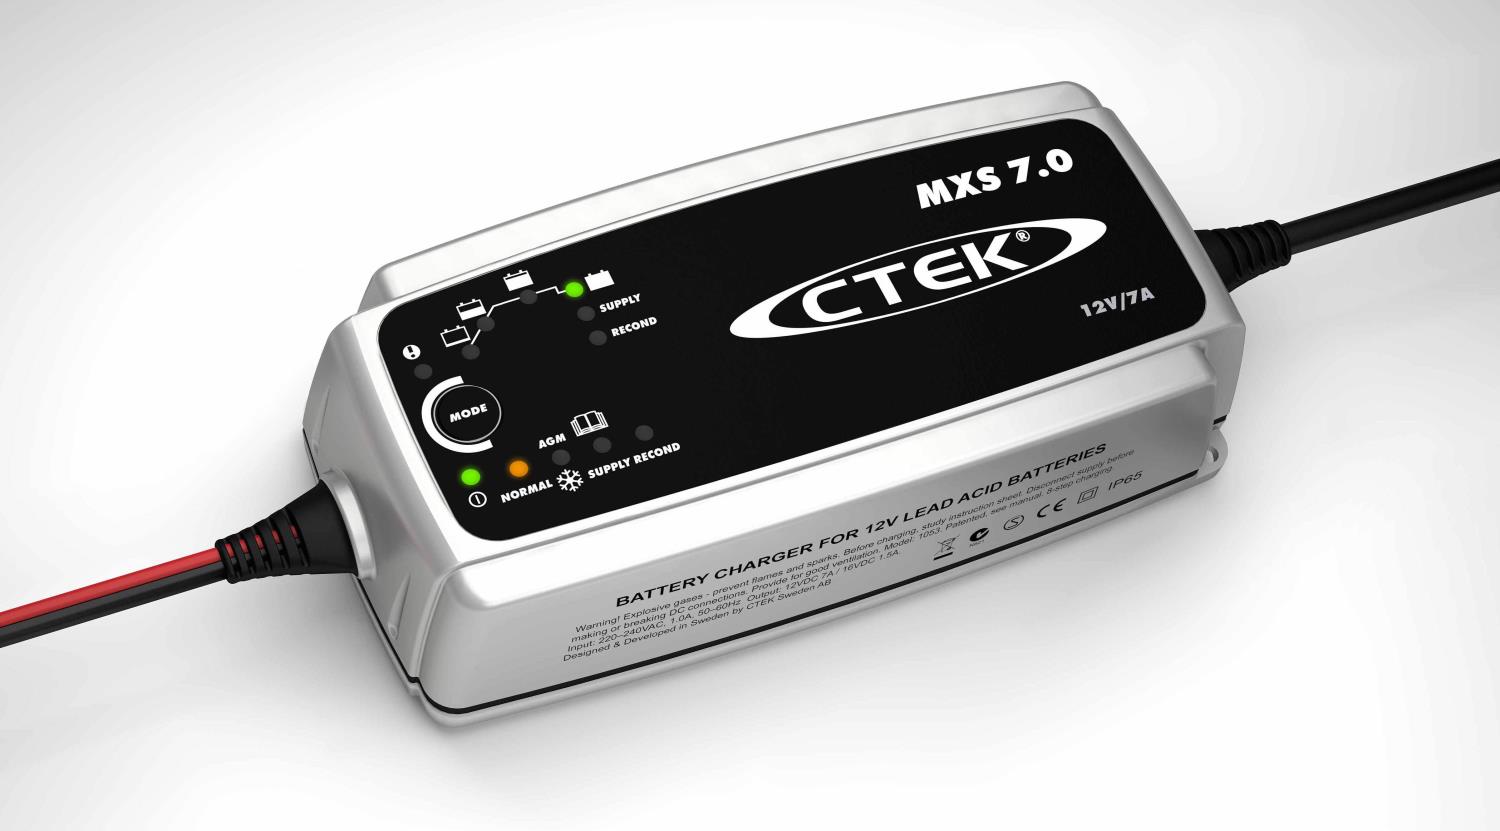 Ctek Pro battery charge mxs7.0 12v/7A